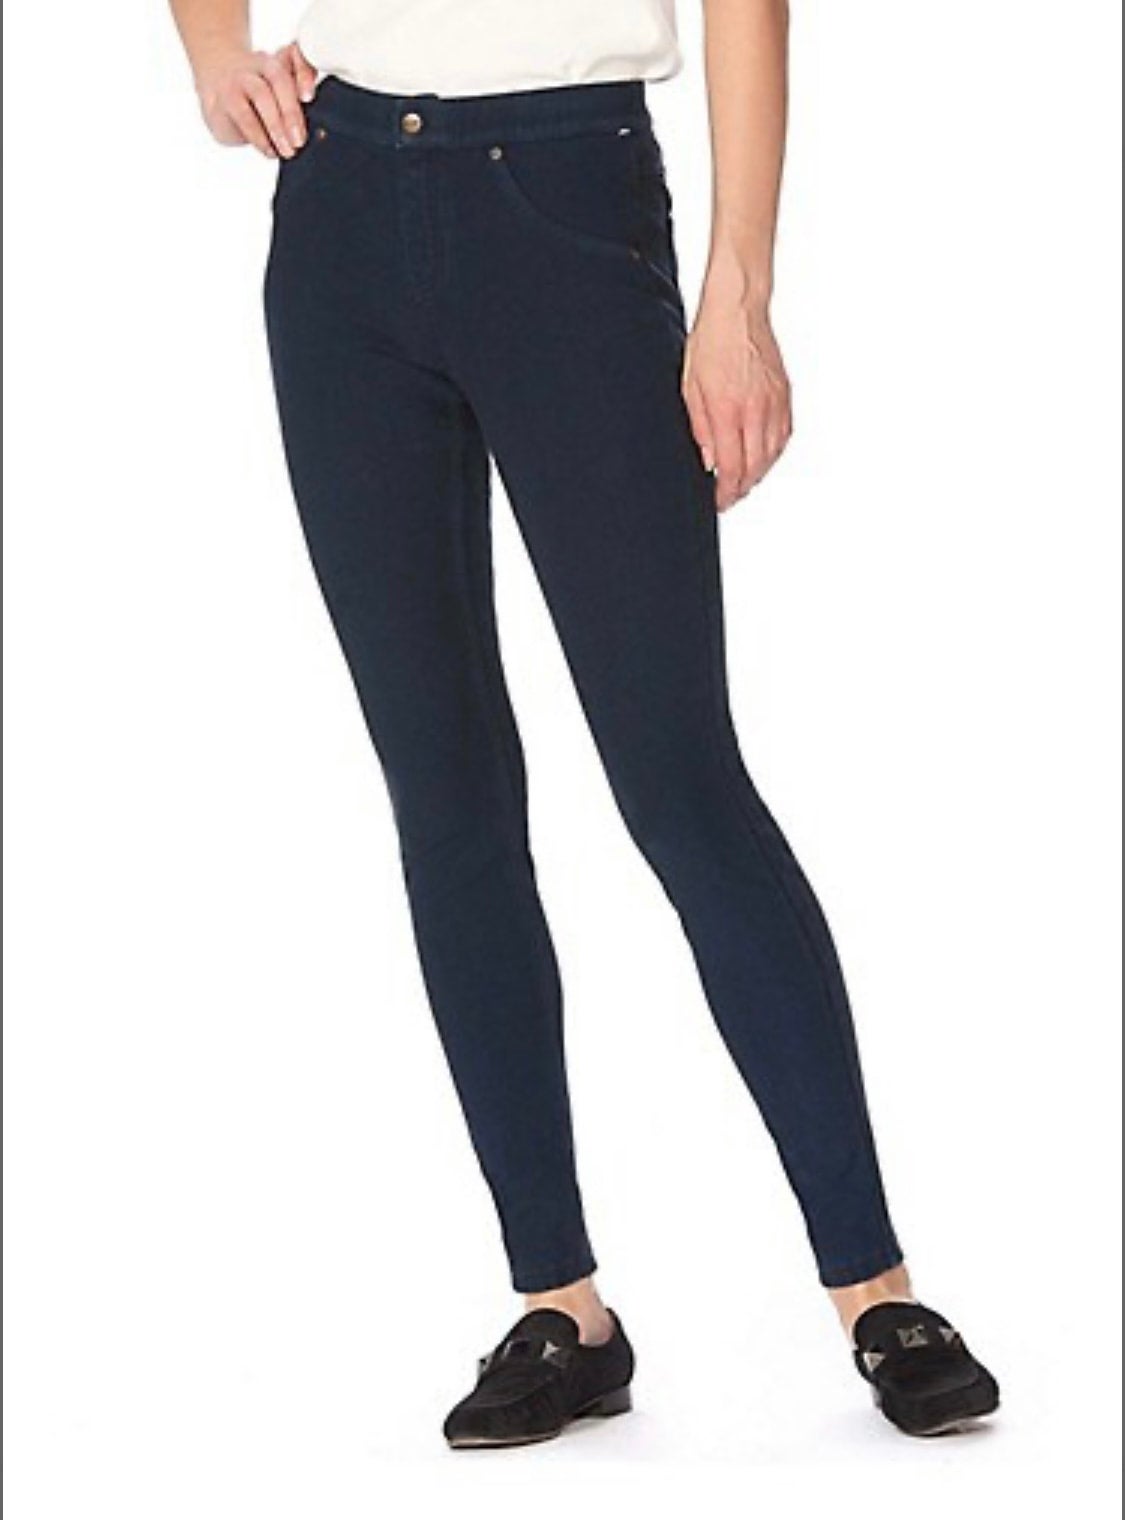 HUE Women's 248801 Vultra Soft Fleece Lined Denim Leggings Size